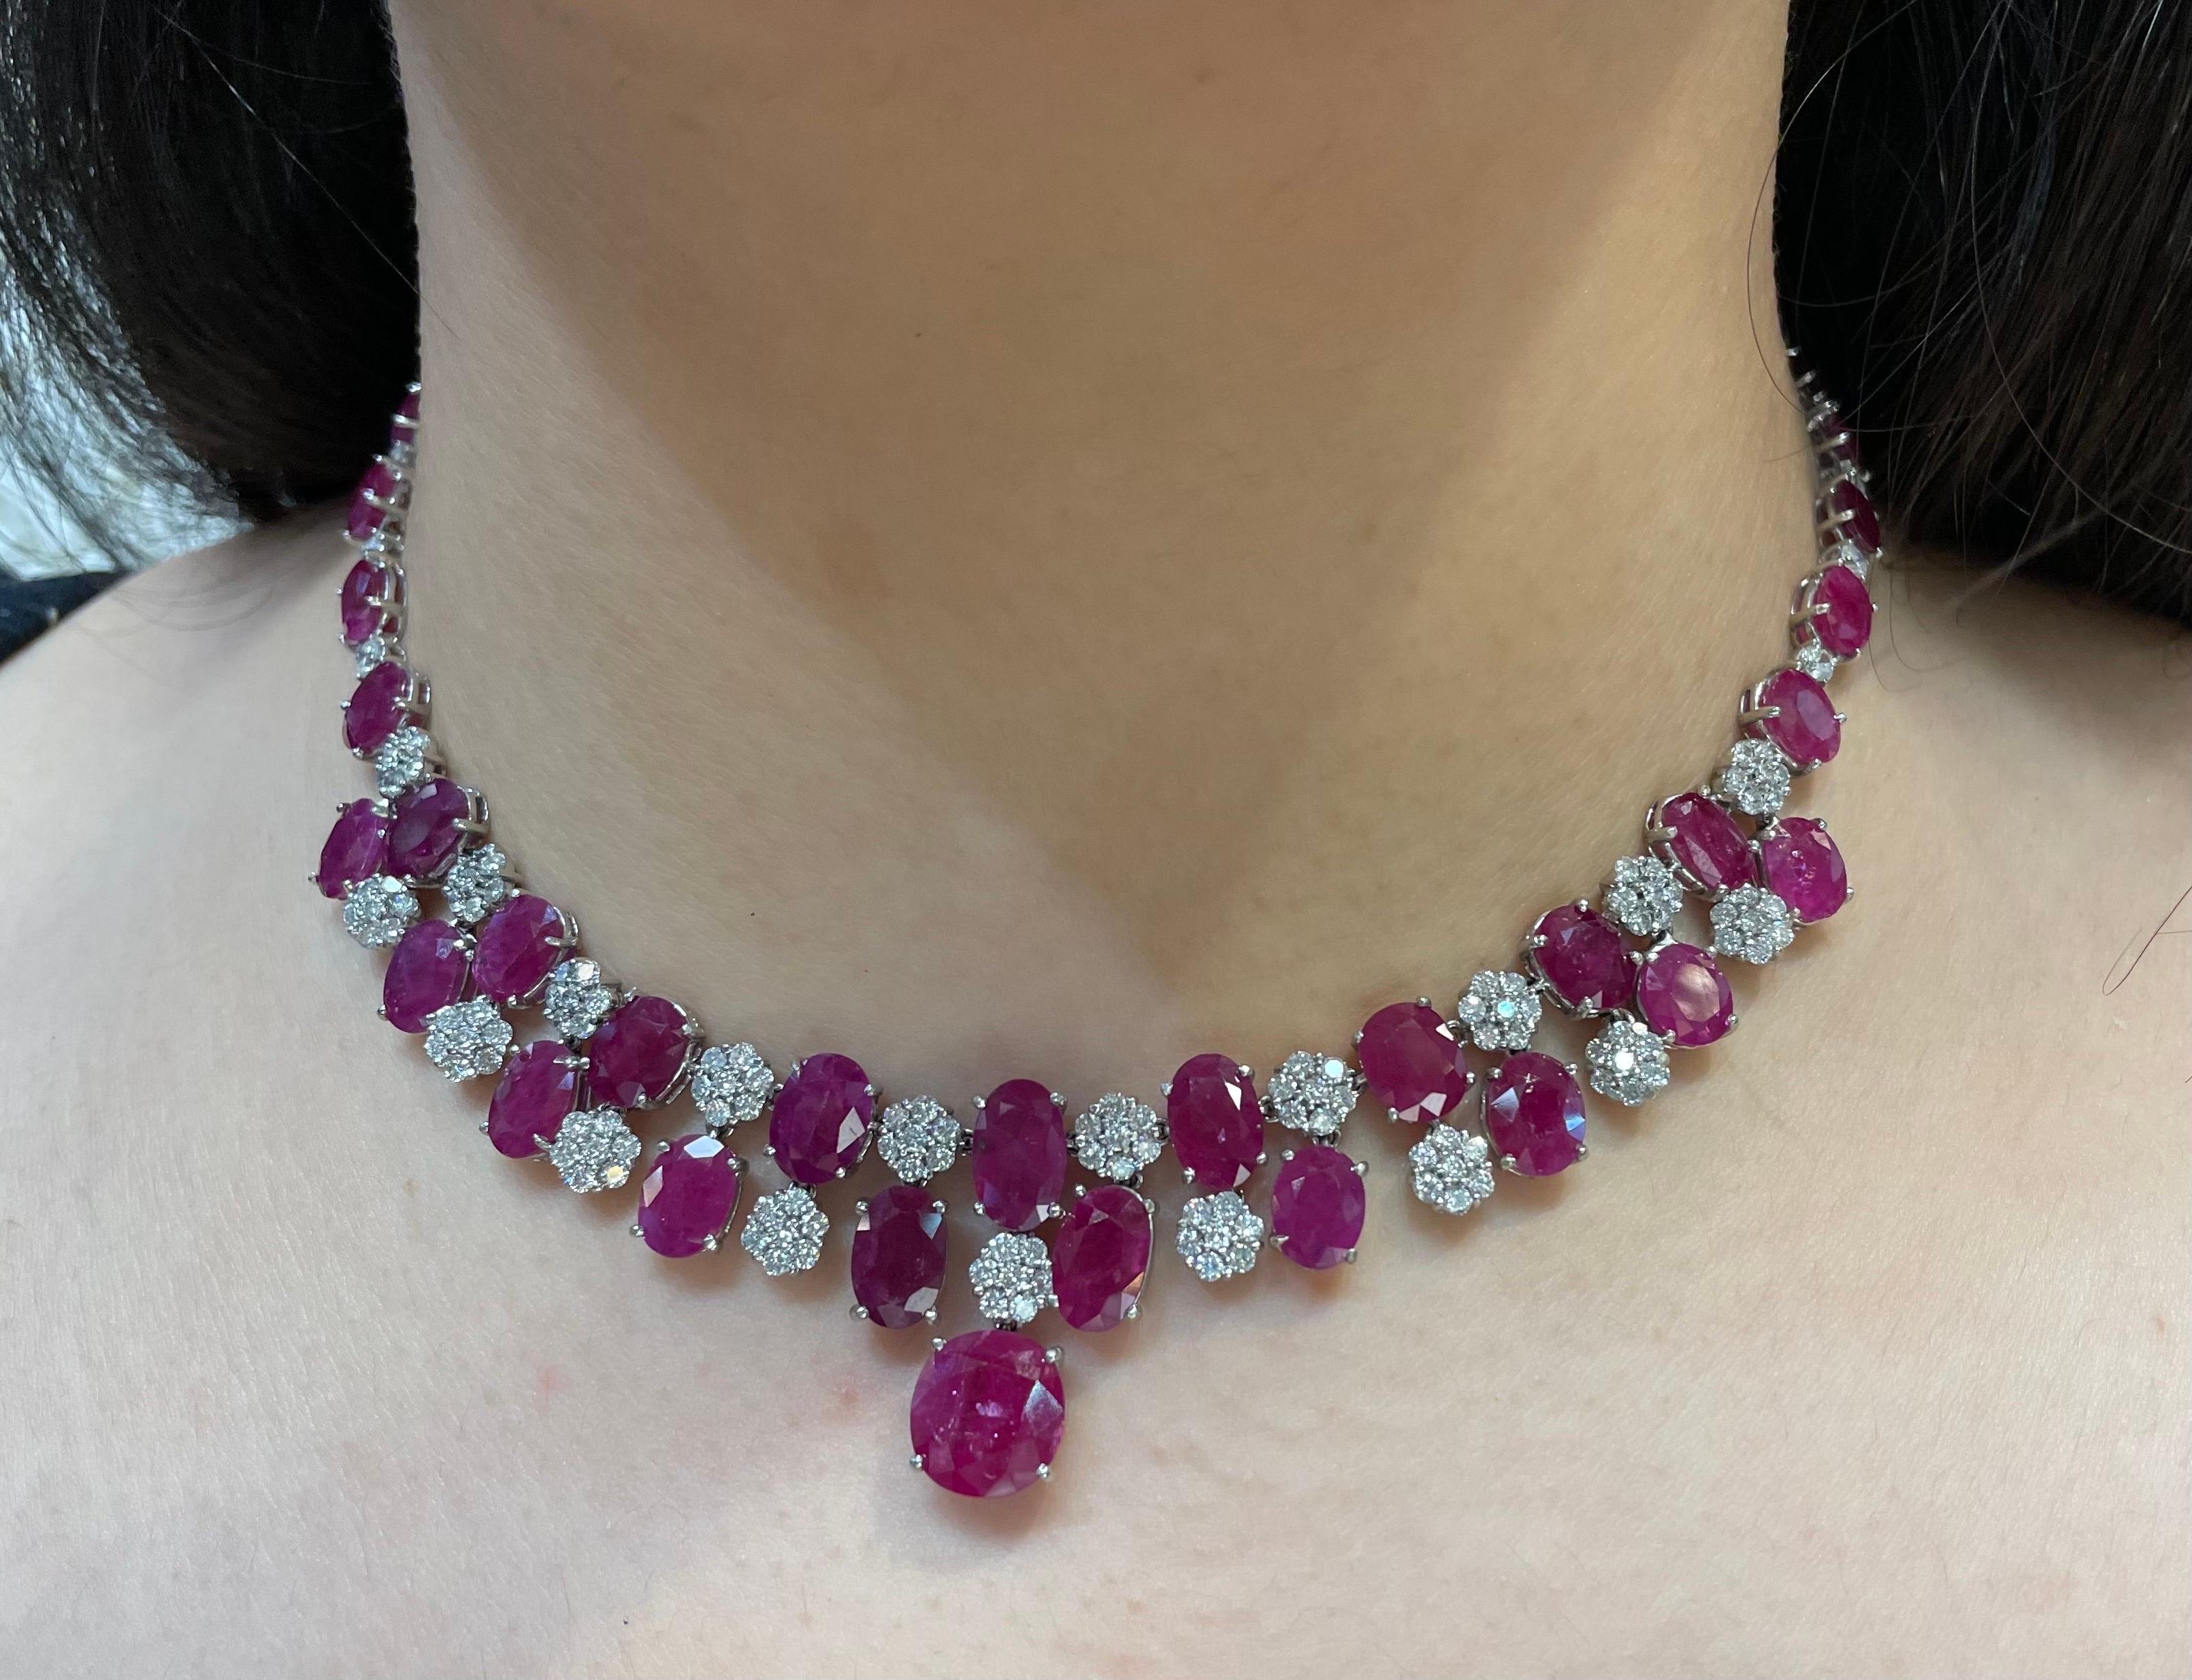 Rubin- und Diamant-Halskette 

Eine Halskette mit 43 Rubinen im Ovalschliff, getrennt durch Diamanten im Rundschliff, gefasst in einem Blumenmotiv

Ungefähre Maße: 16